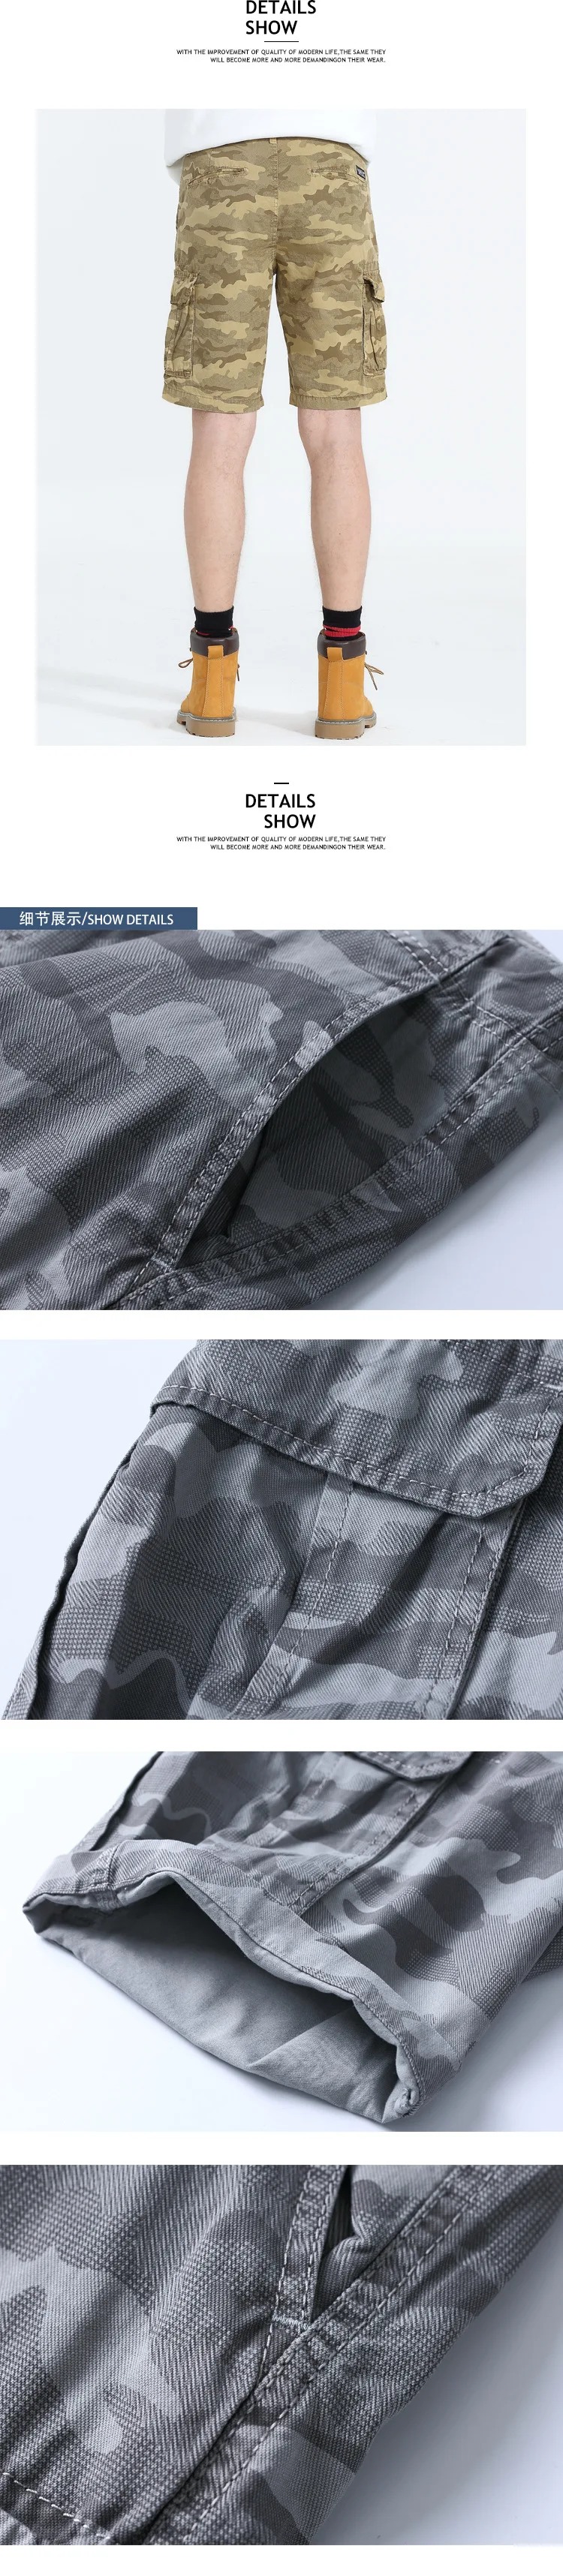 Denyblood джинсы мужские шорты 2018 Новое поступление; Летнее камуфляж печати шорты-карго Брюки Чинос Капри бермуды Пляжные шорты D801C